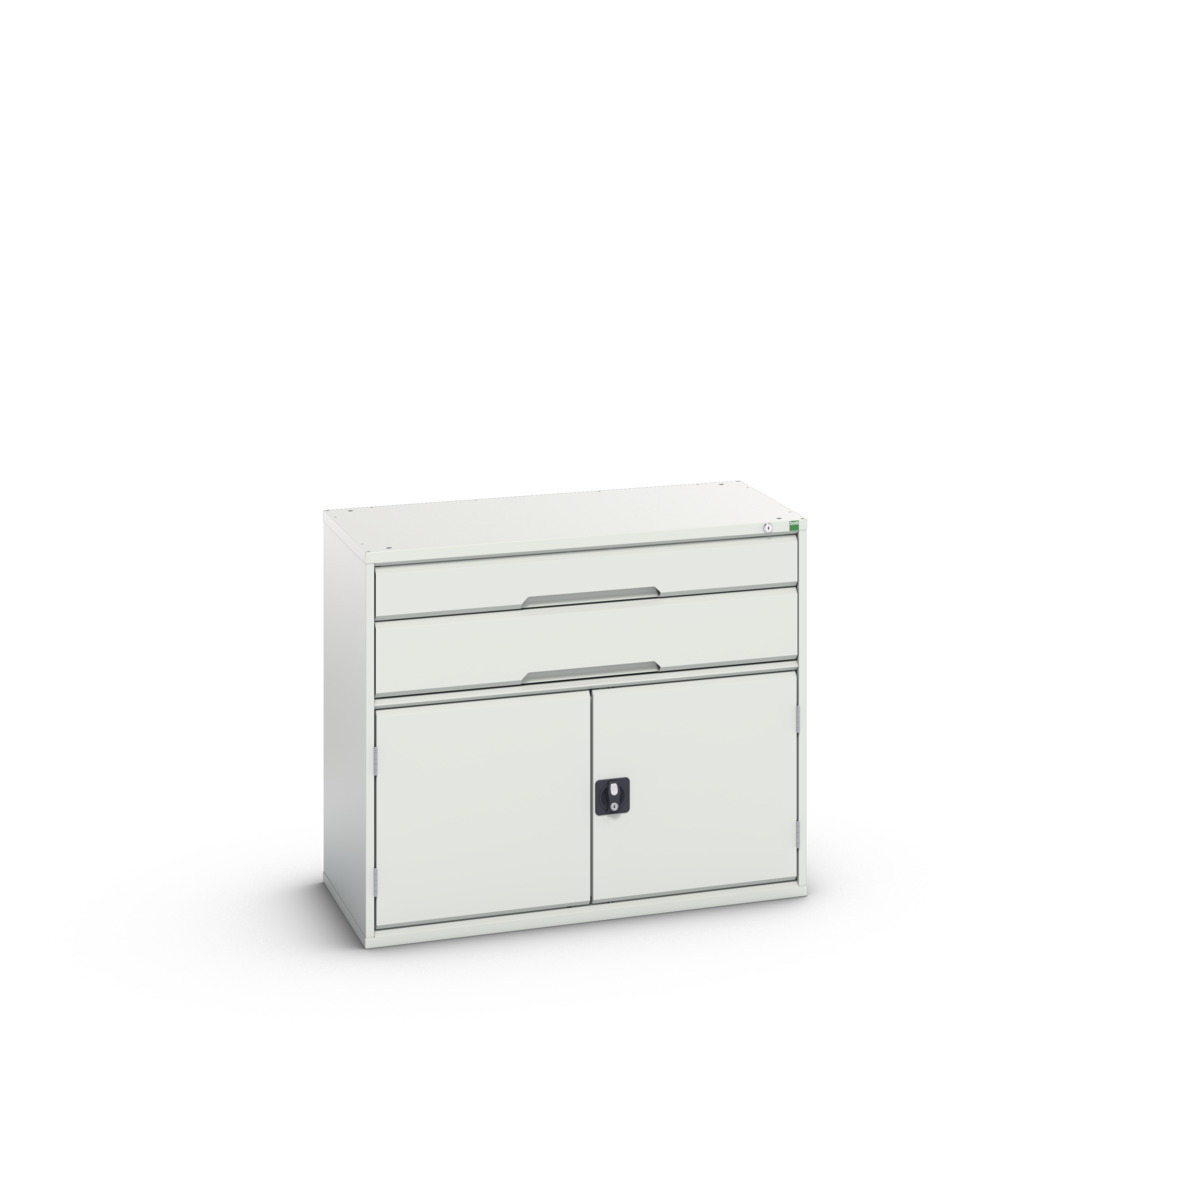 16925237.16 - verso drawer-door cabinet